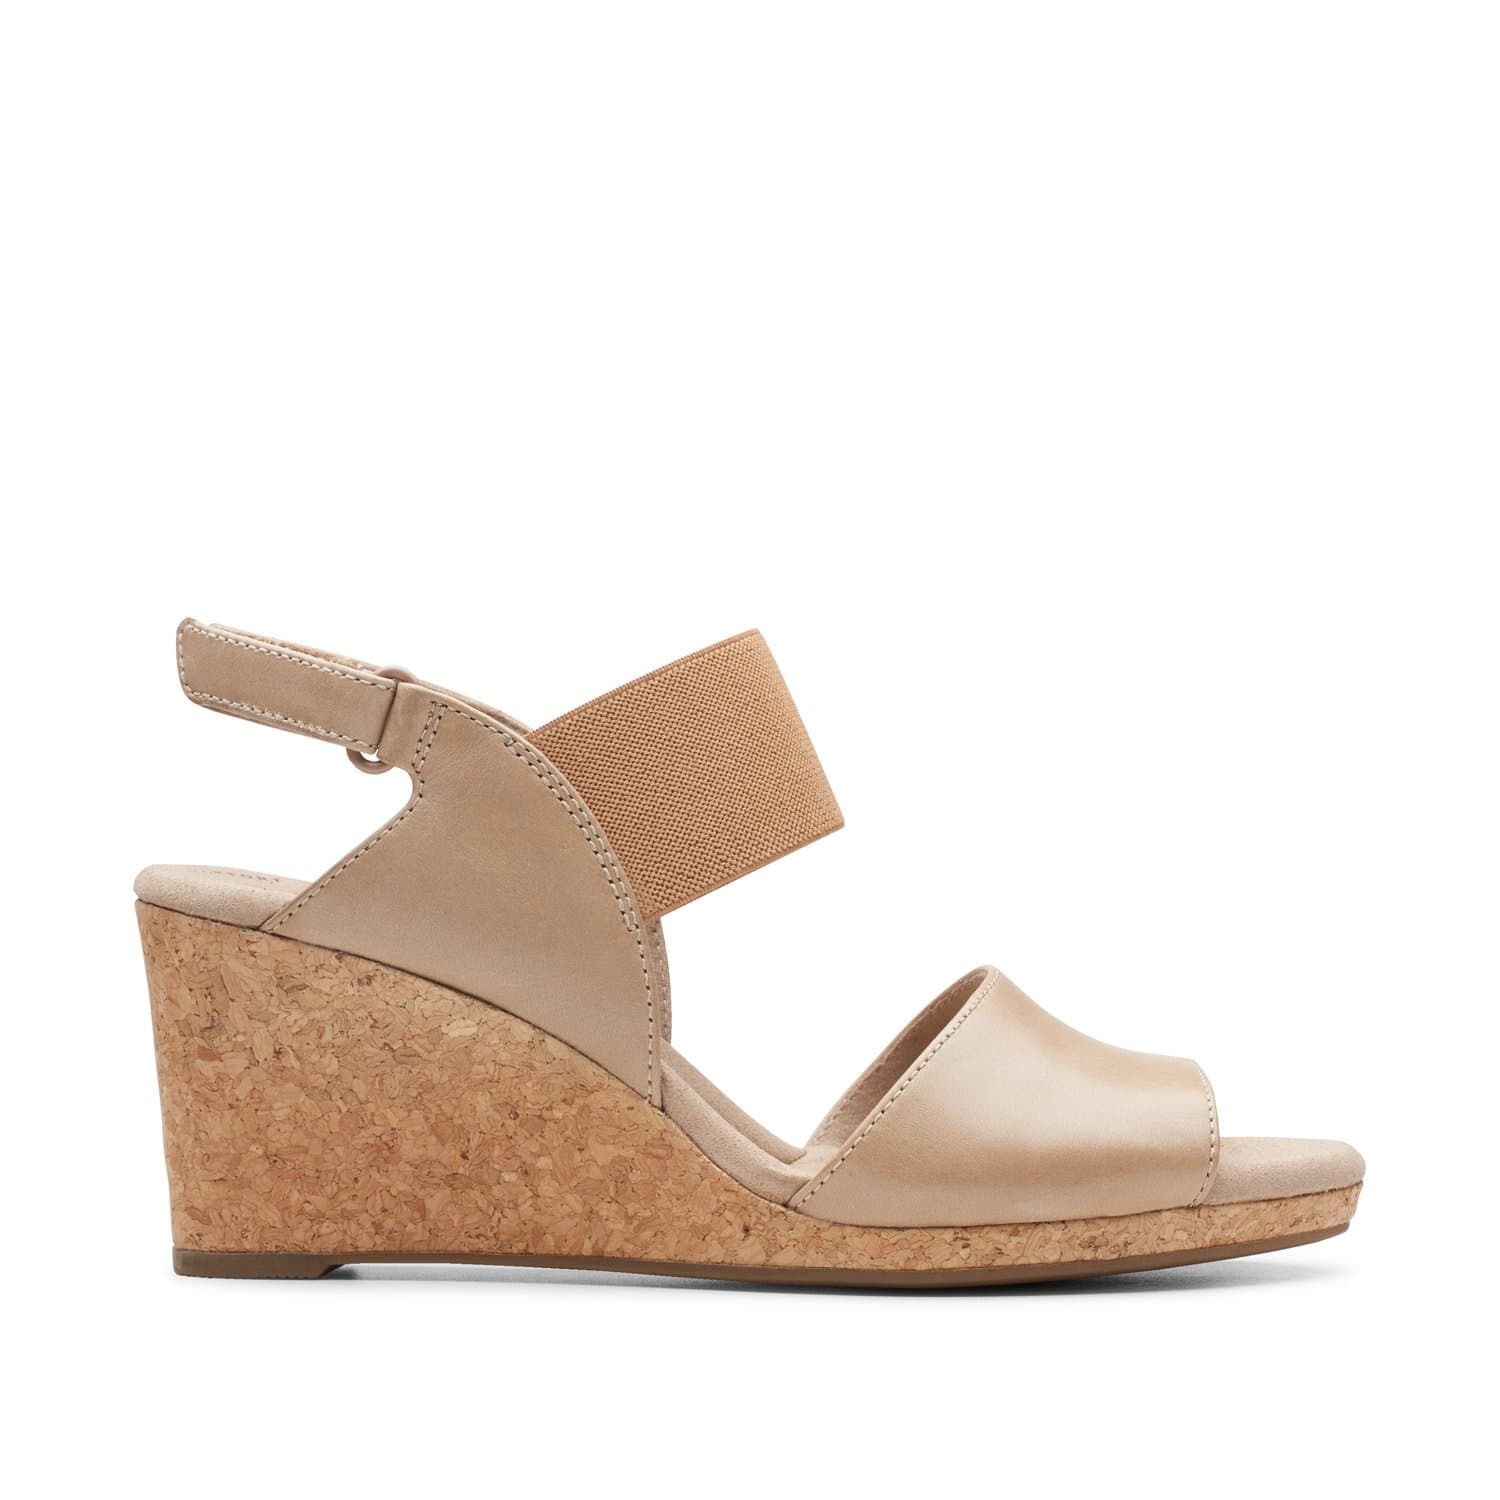 Clarks-Lafley-Lily-Women's-Sandals-Sand-Leather-/-Textile-Combi-26150031